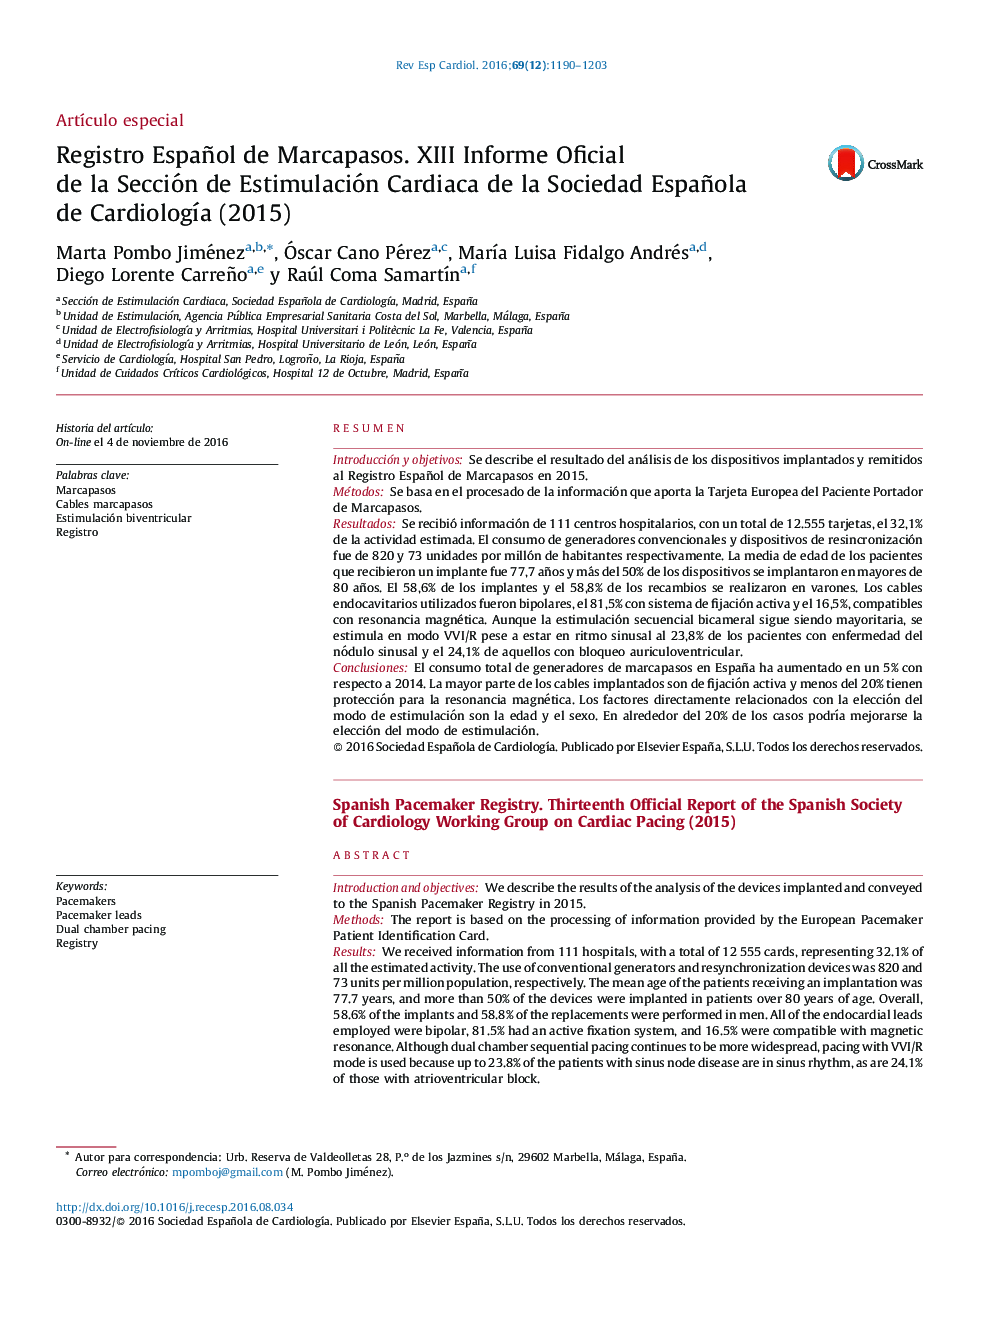 Registro Español de Marcapasos. XIIIÂ Informe Oficial deÂ laÂ Sección deÂ Estimulación Cardiaca deÂ laÂ Sociedad Española deÂ CardiologÃ­aÂ (2015)